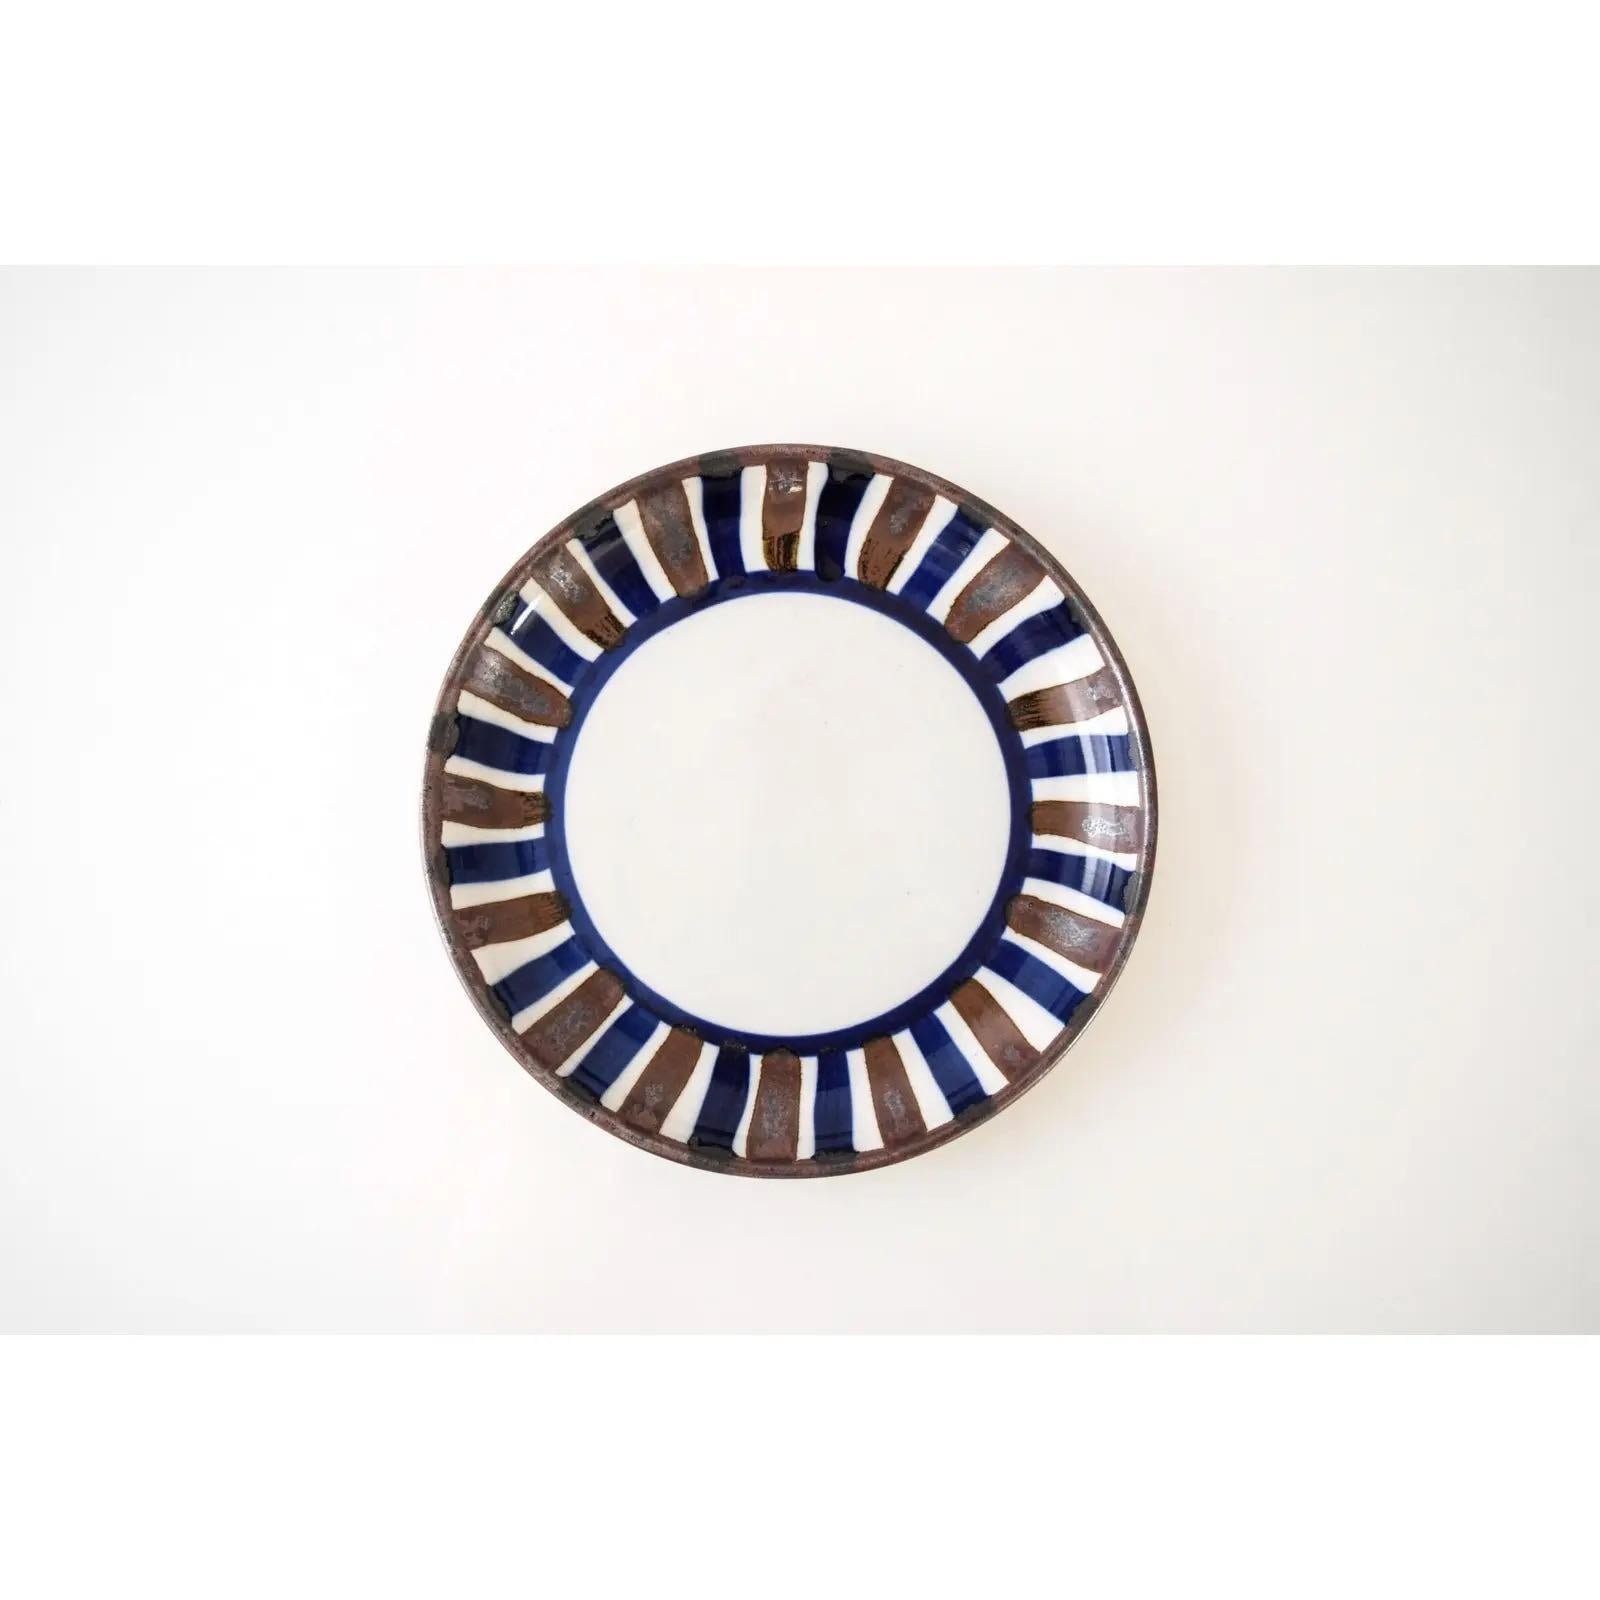 Diese kleine dekorative dänische Keramikschüssel aus der Mitte des Jahrhunderts, um 1960, hat ein schönes flaches Profil. Das schlichte, modernistische Design zeichnet sich durch organische, handgemalte blaue und braune Streifen aus.

Abmessungen: